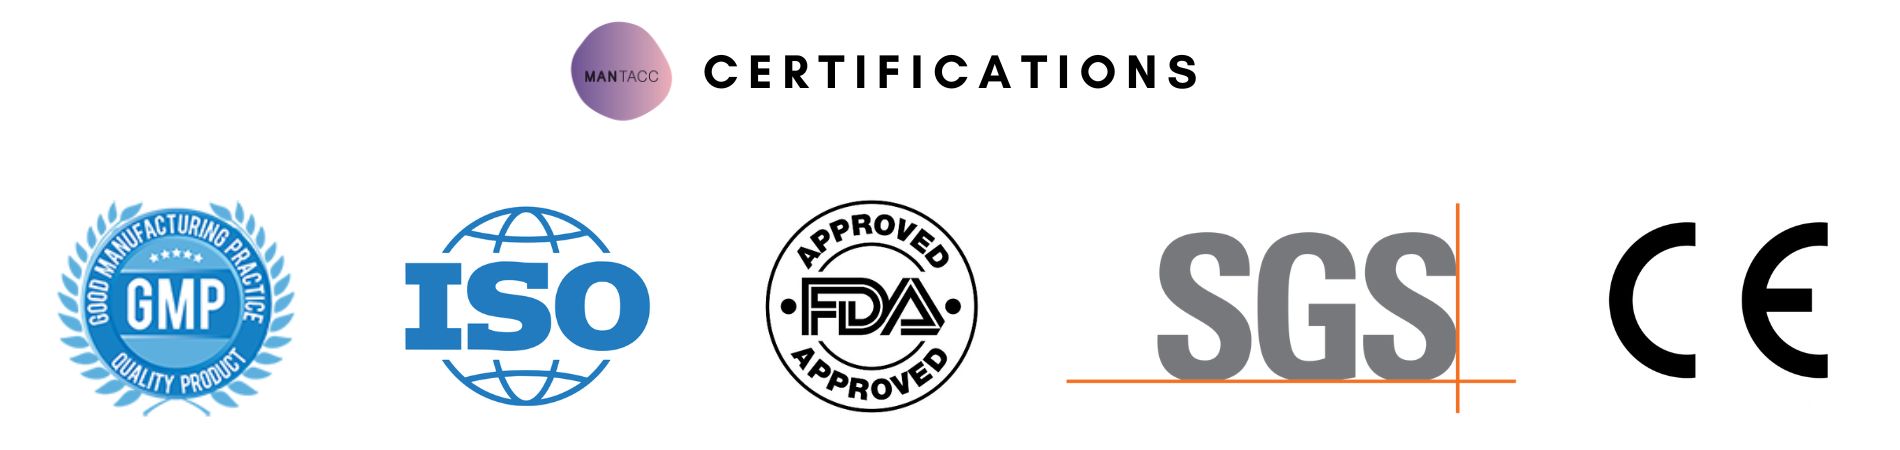 Mantacc GMP, ISO, FDA, SGS, CE certificates banner